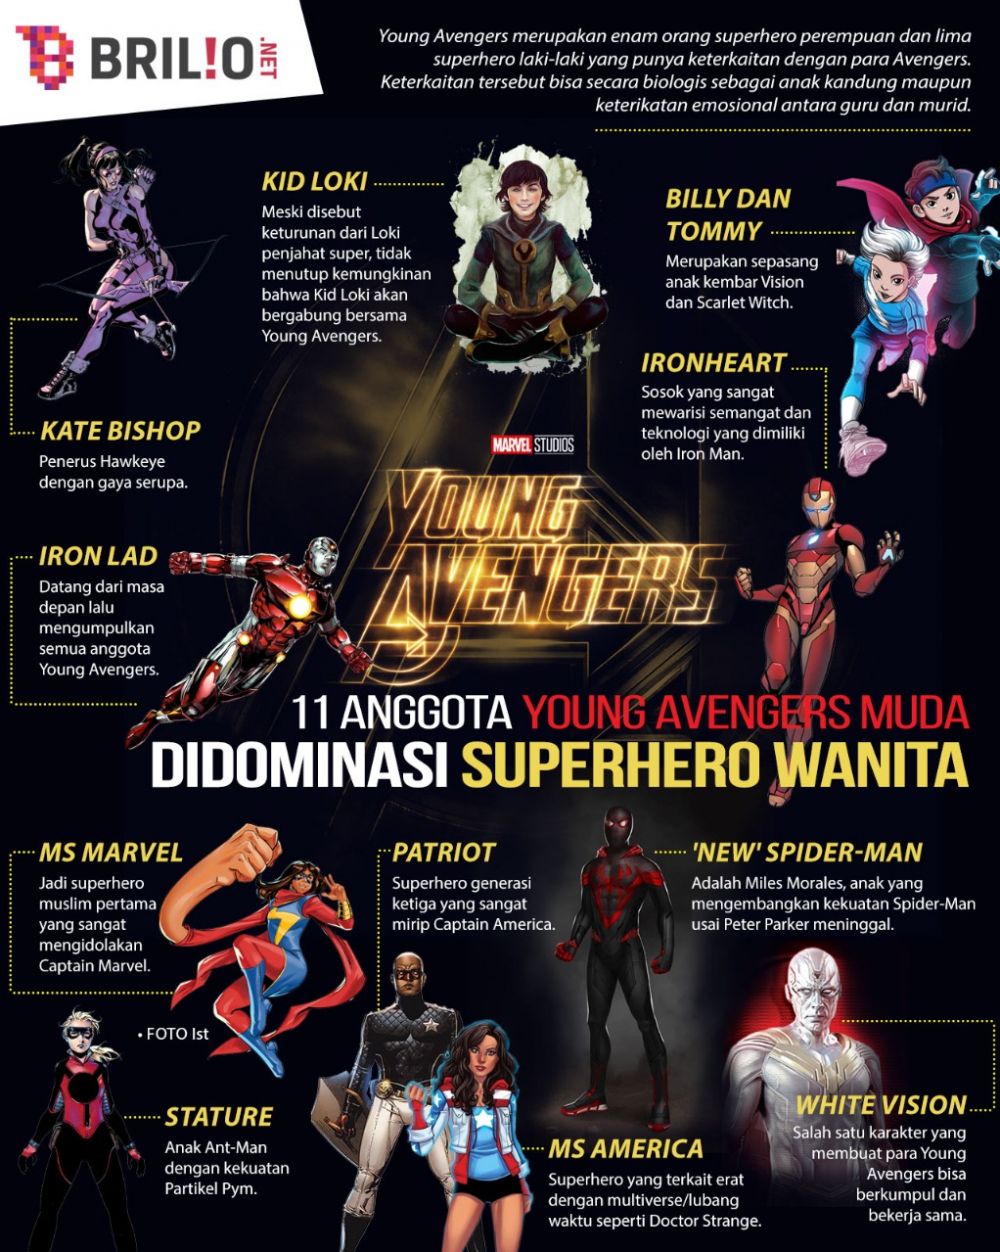 11 Anggota Young Avengers, superhero muda yang didominasi perempuan